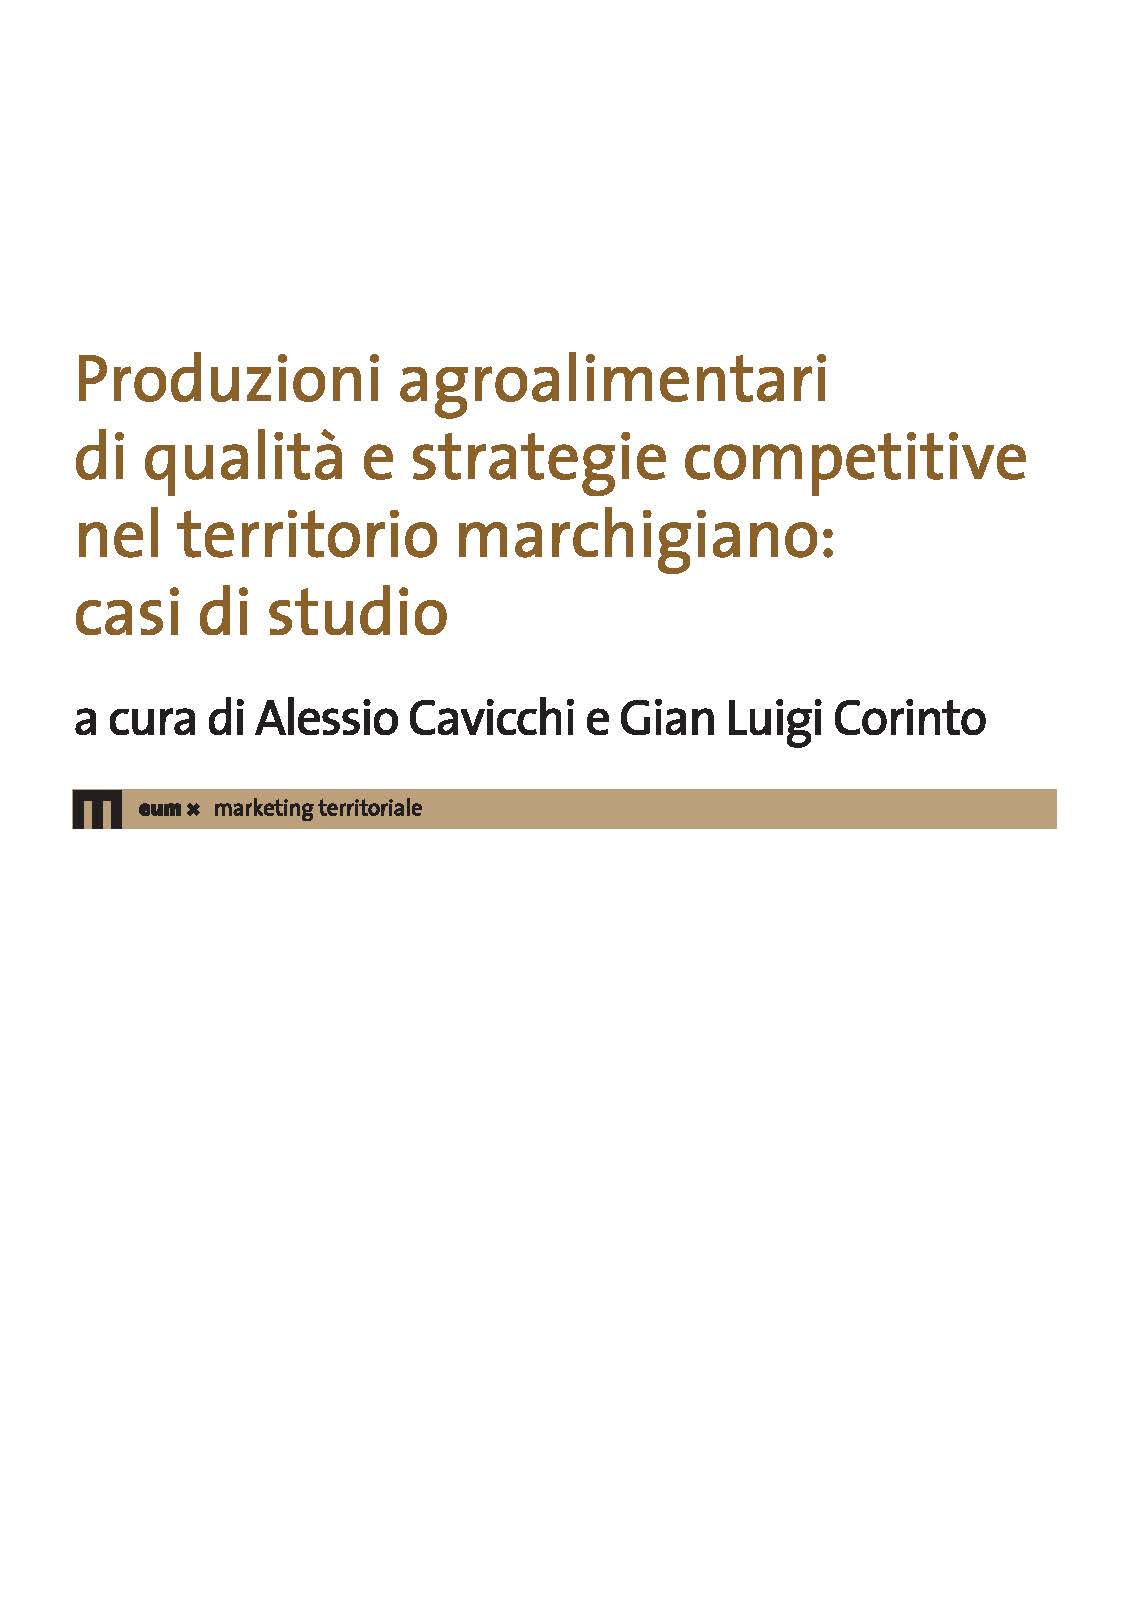 Produzioni agroalimentari di qualità e strategie competitive nel territorio marchigiano: casi di studio